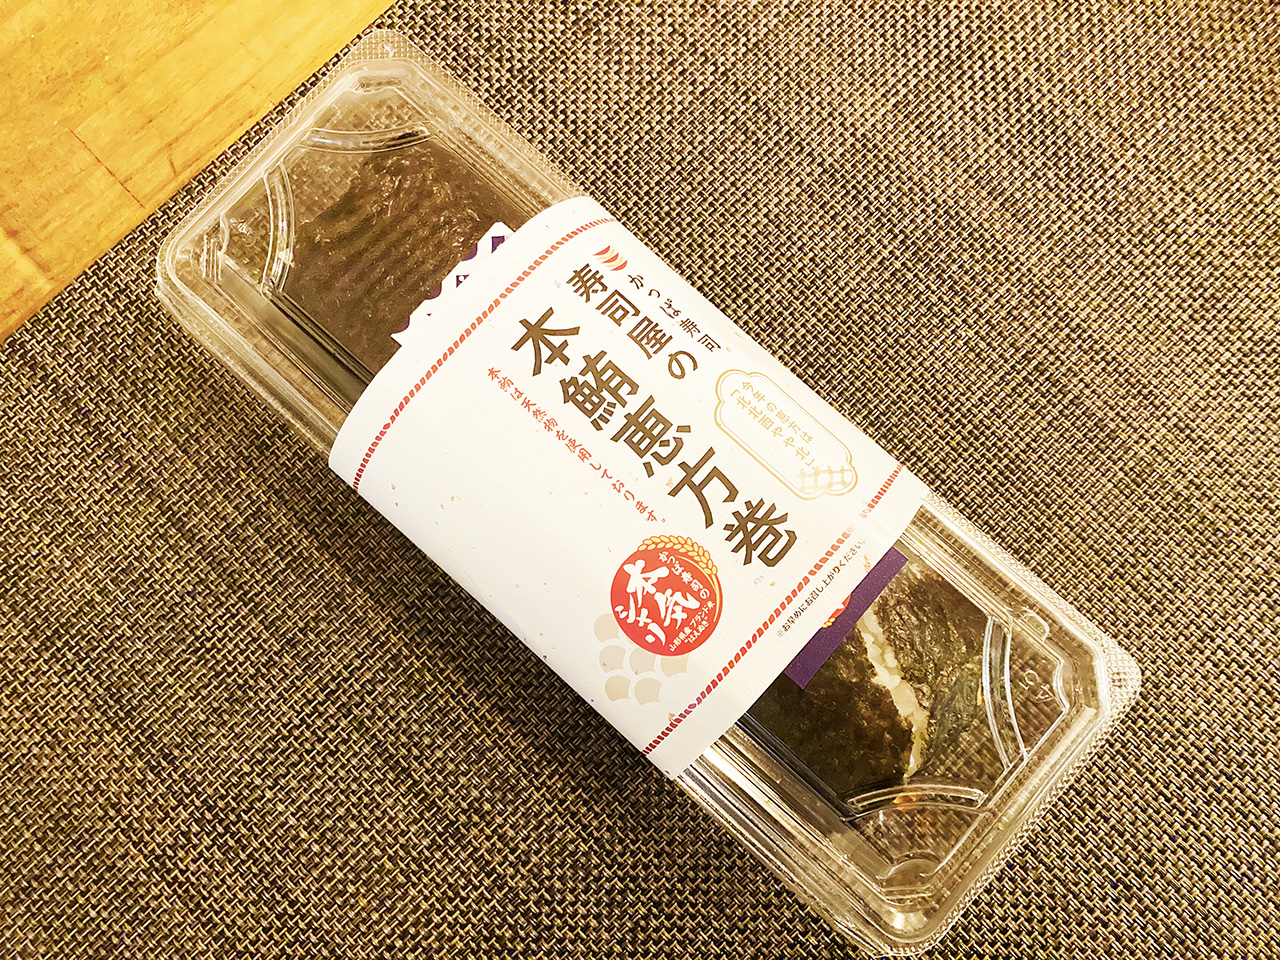 1店舗50本限定販売で話題の『かっぱ寿司・天然本鮪の恵方巻』を実食しました！